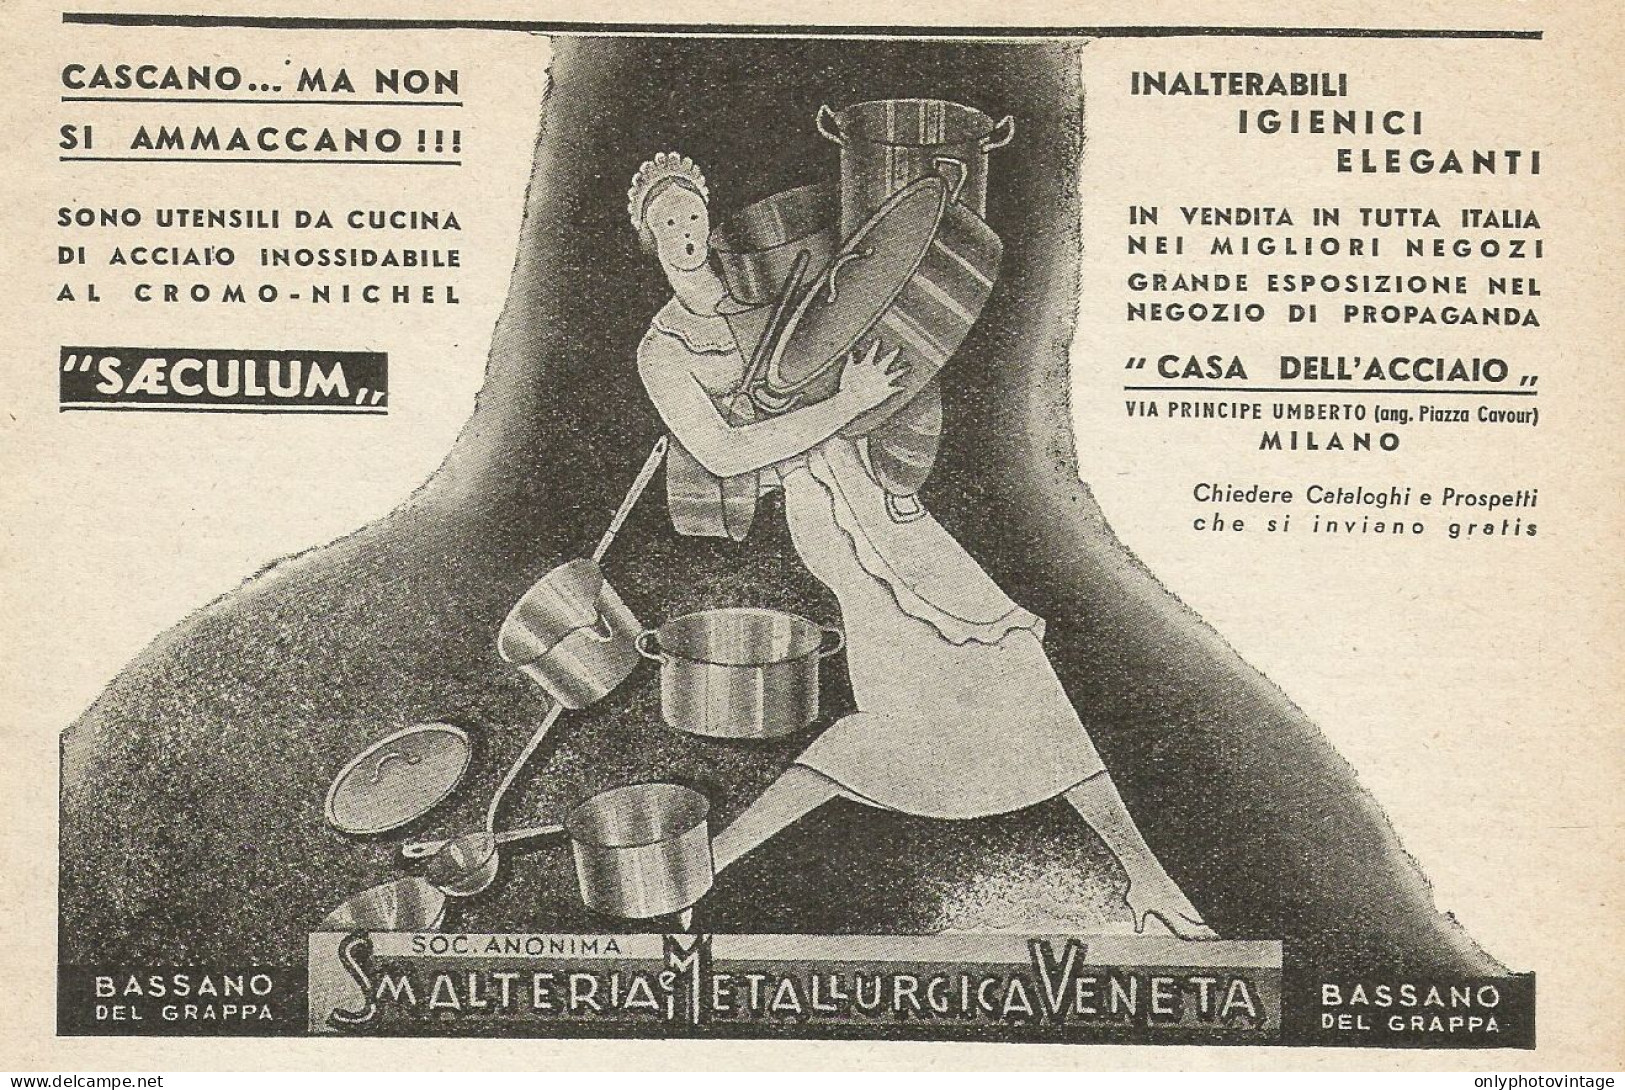 Smalteria Metallurgica Veneta - Pubblicità 1937 - Advertising - Publicités